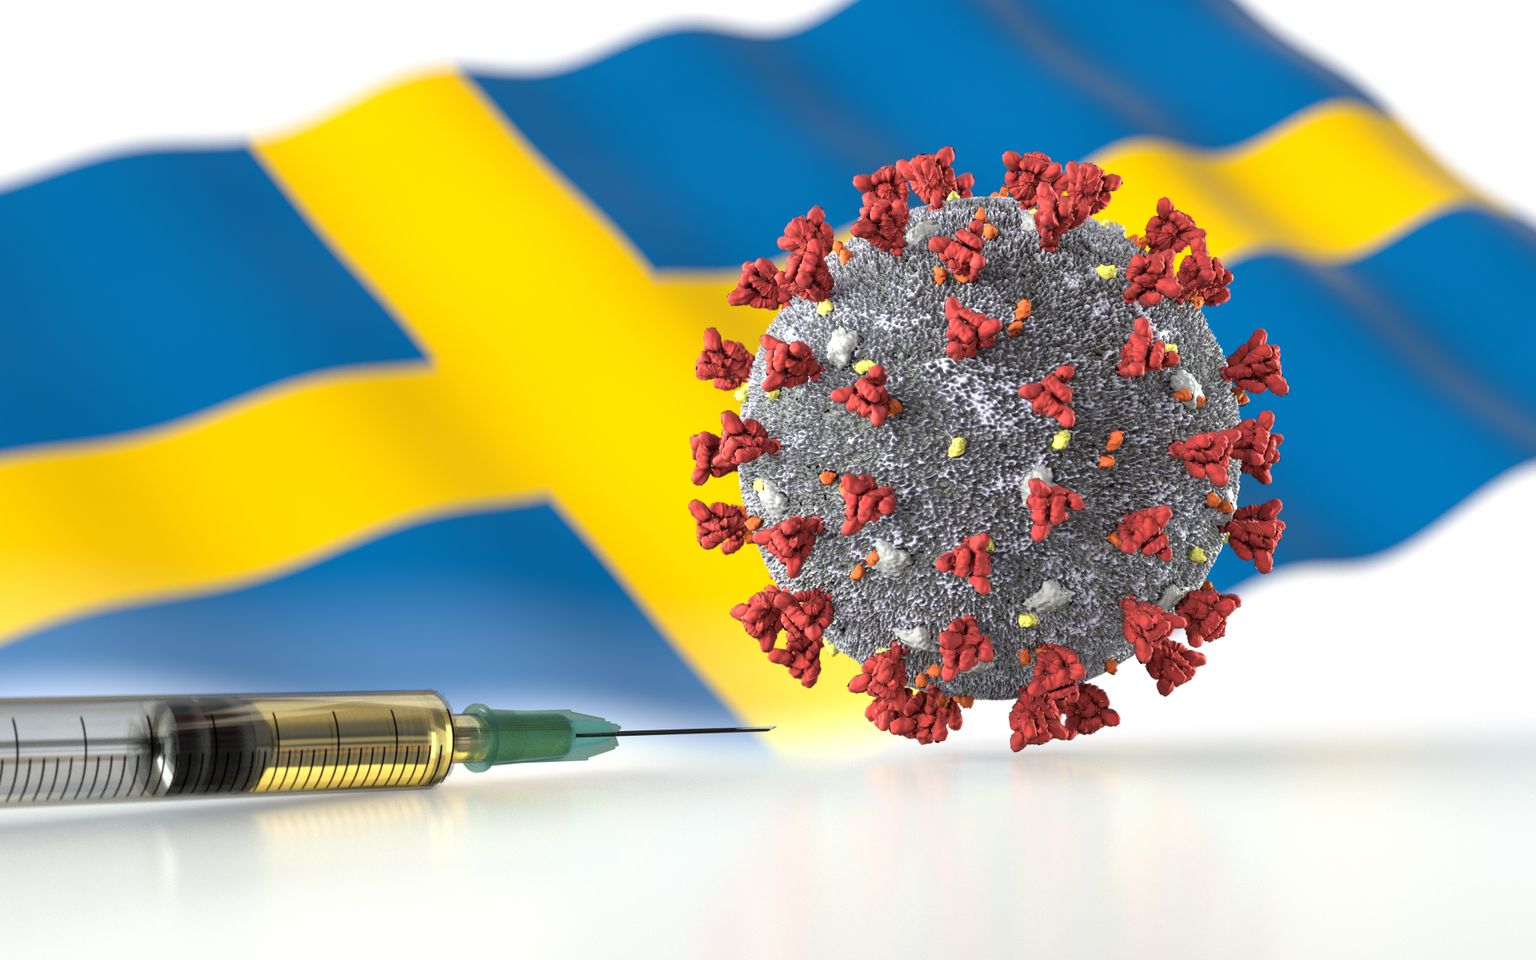 Rootsi lipp, koroonaviiruse osake ja vaktsiiniga süstal. Pilt on illustreeriv